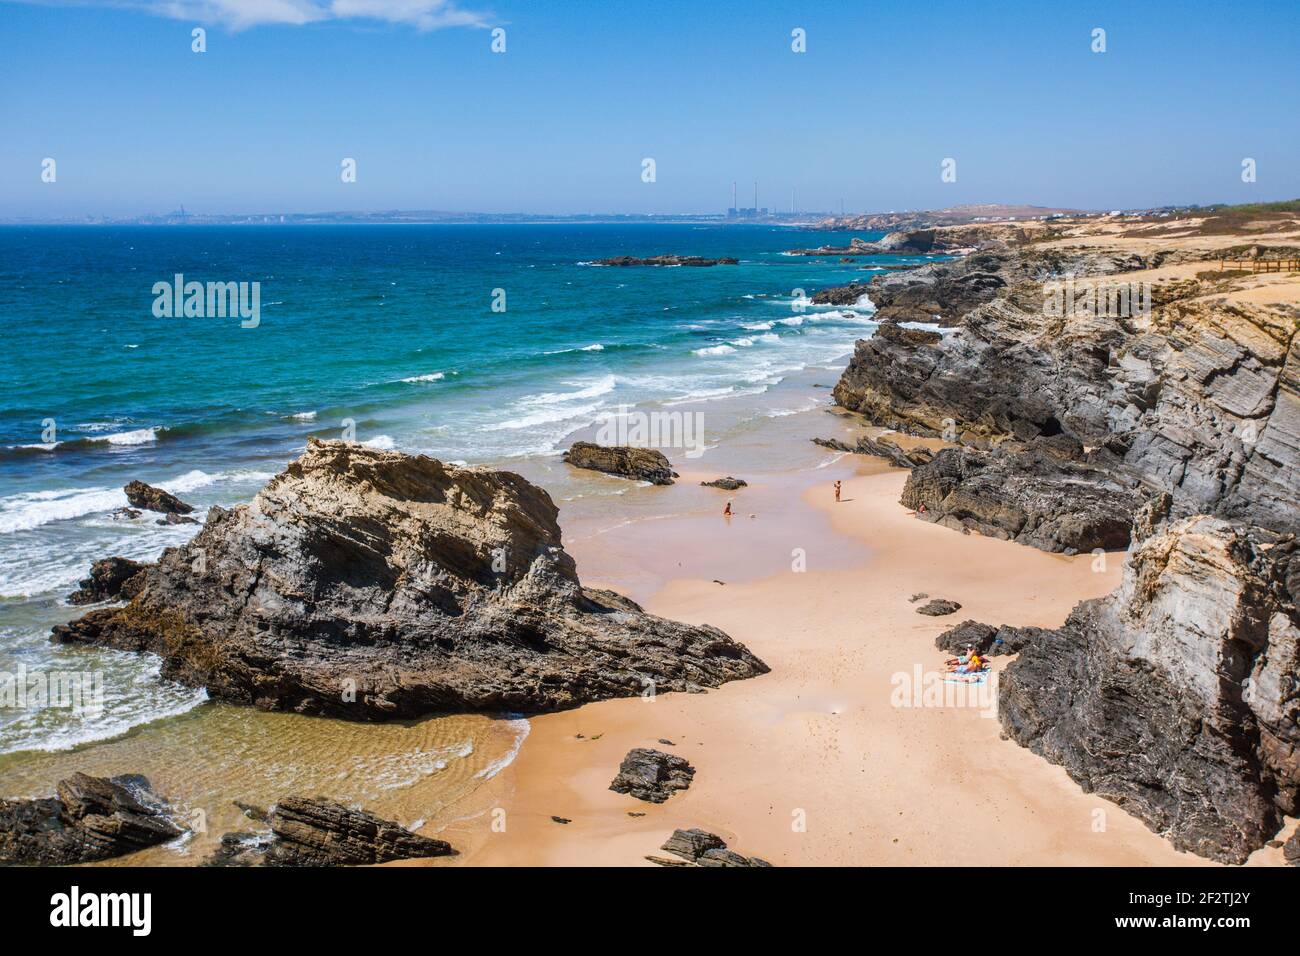 La plage sauvage de Porto Covo sur la côte atlantique, Alentejo - Portugal. Banque D'Images